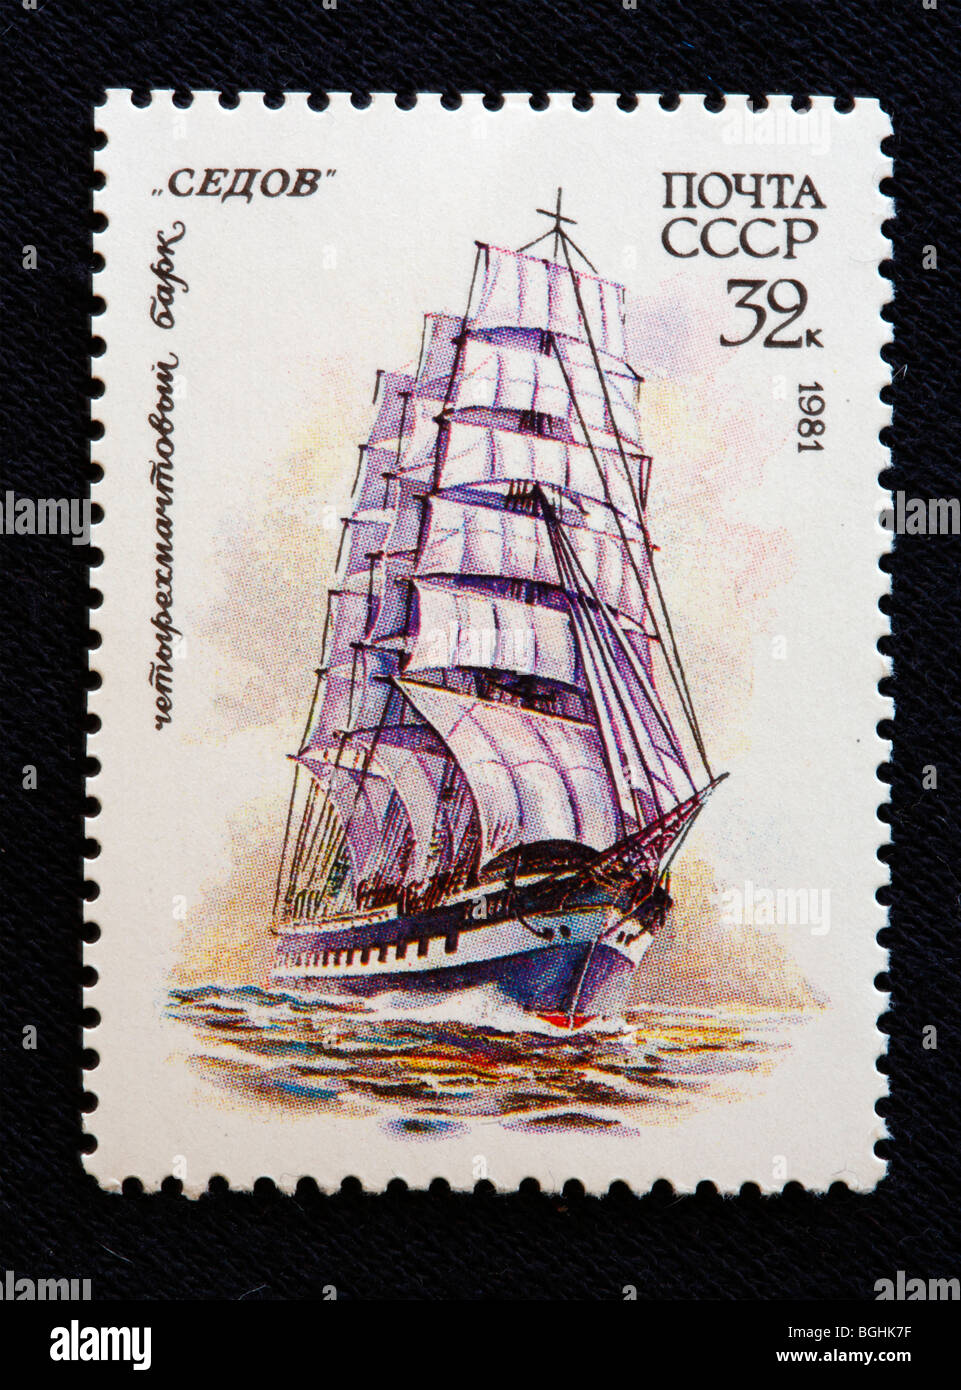 Russischen Segeln Bark "Sedov", Briefmarke, UdSSR, 1981 Stockfoto